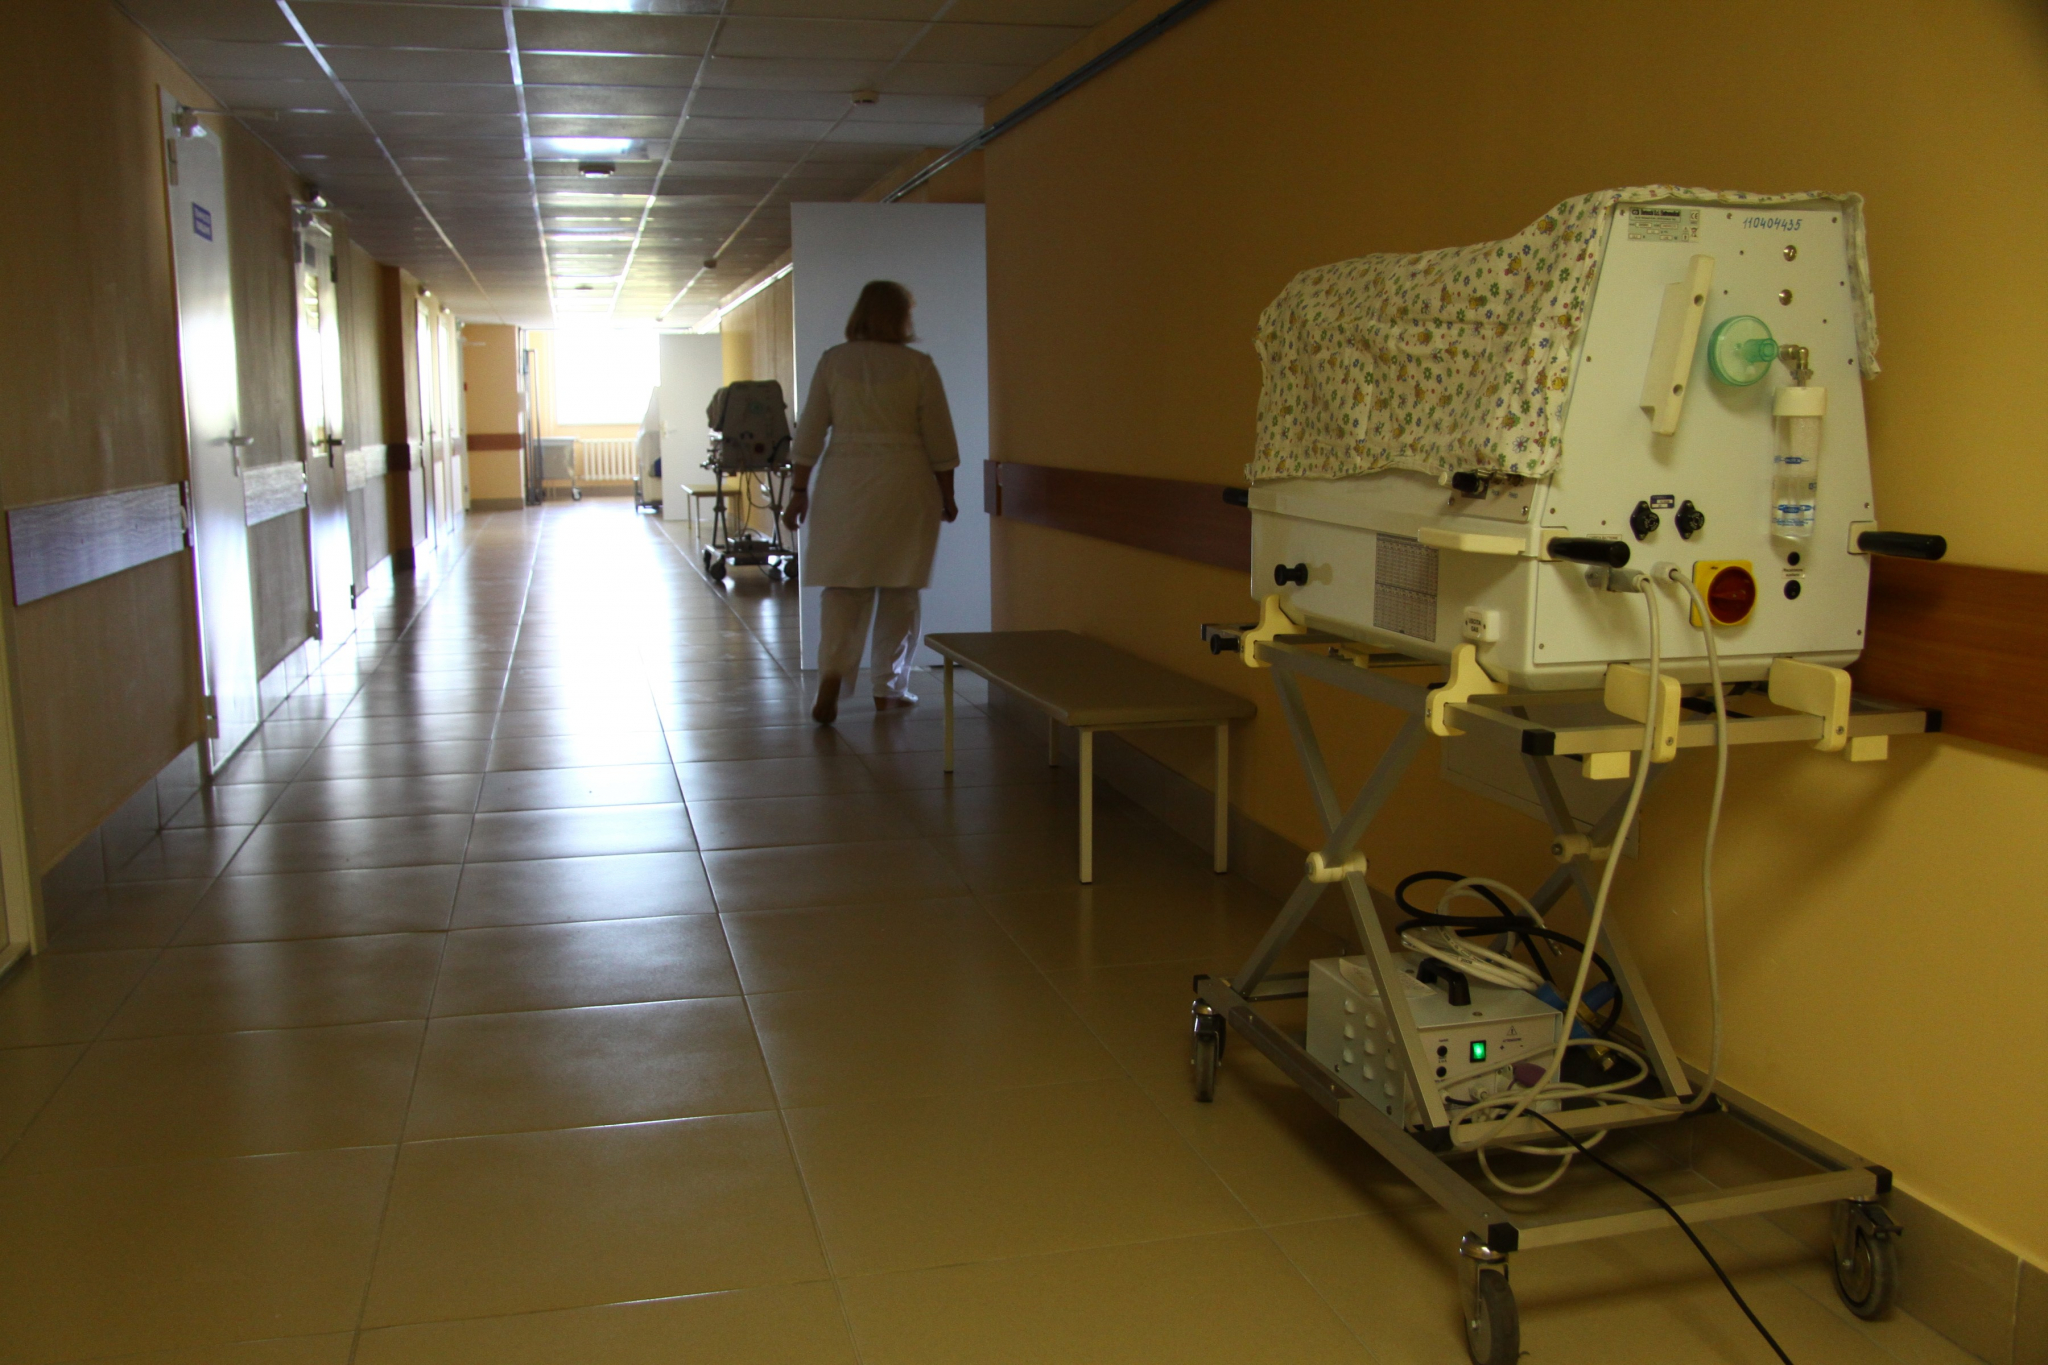 Грядет проверка! Министр здравоохранения Мурашко отправит ревизоров в пензенскую больницу